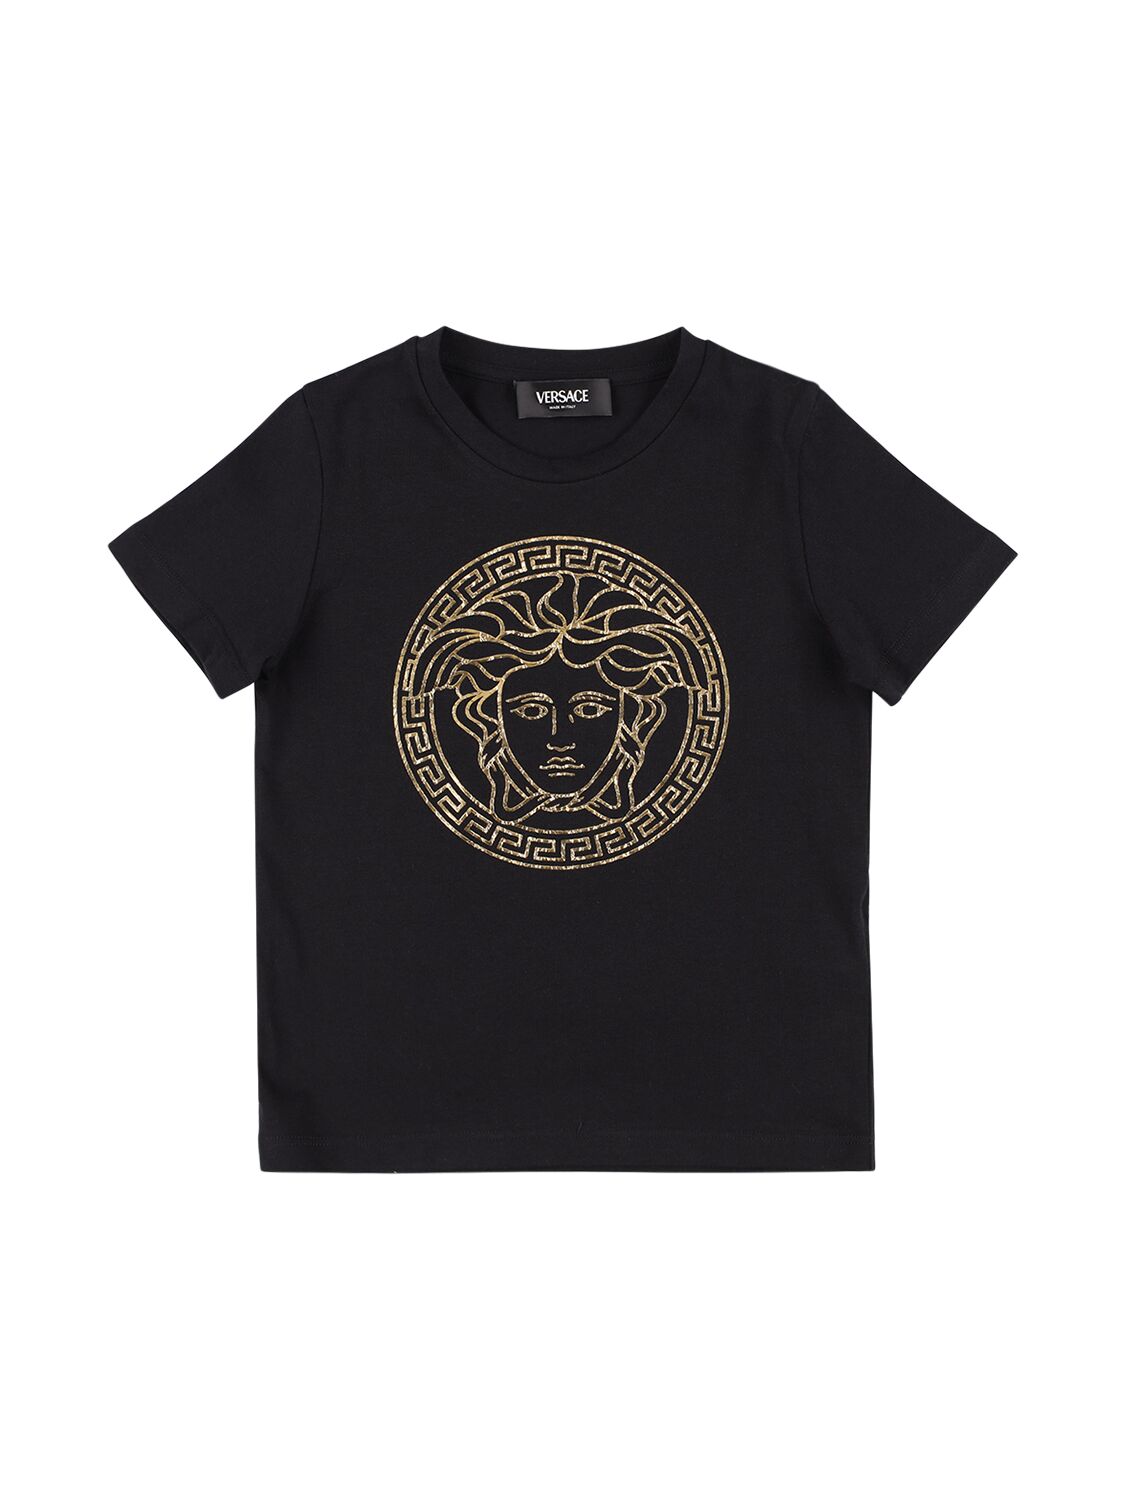 Versace Kids' T-shirt Aus Baumwolljersey Mit Medusadruck In Schwarz,gold